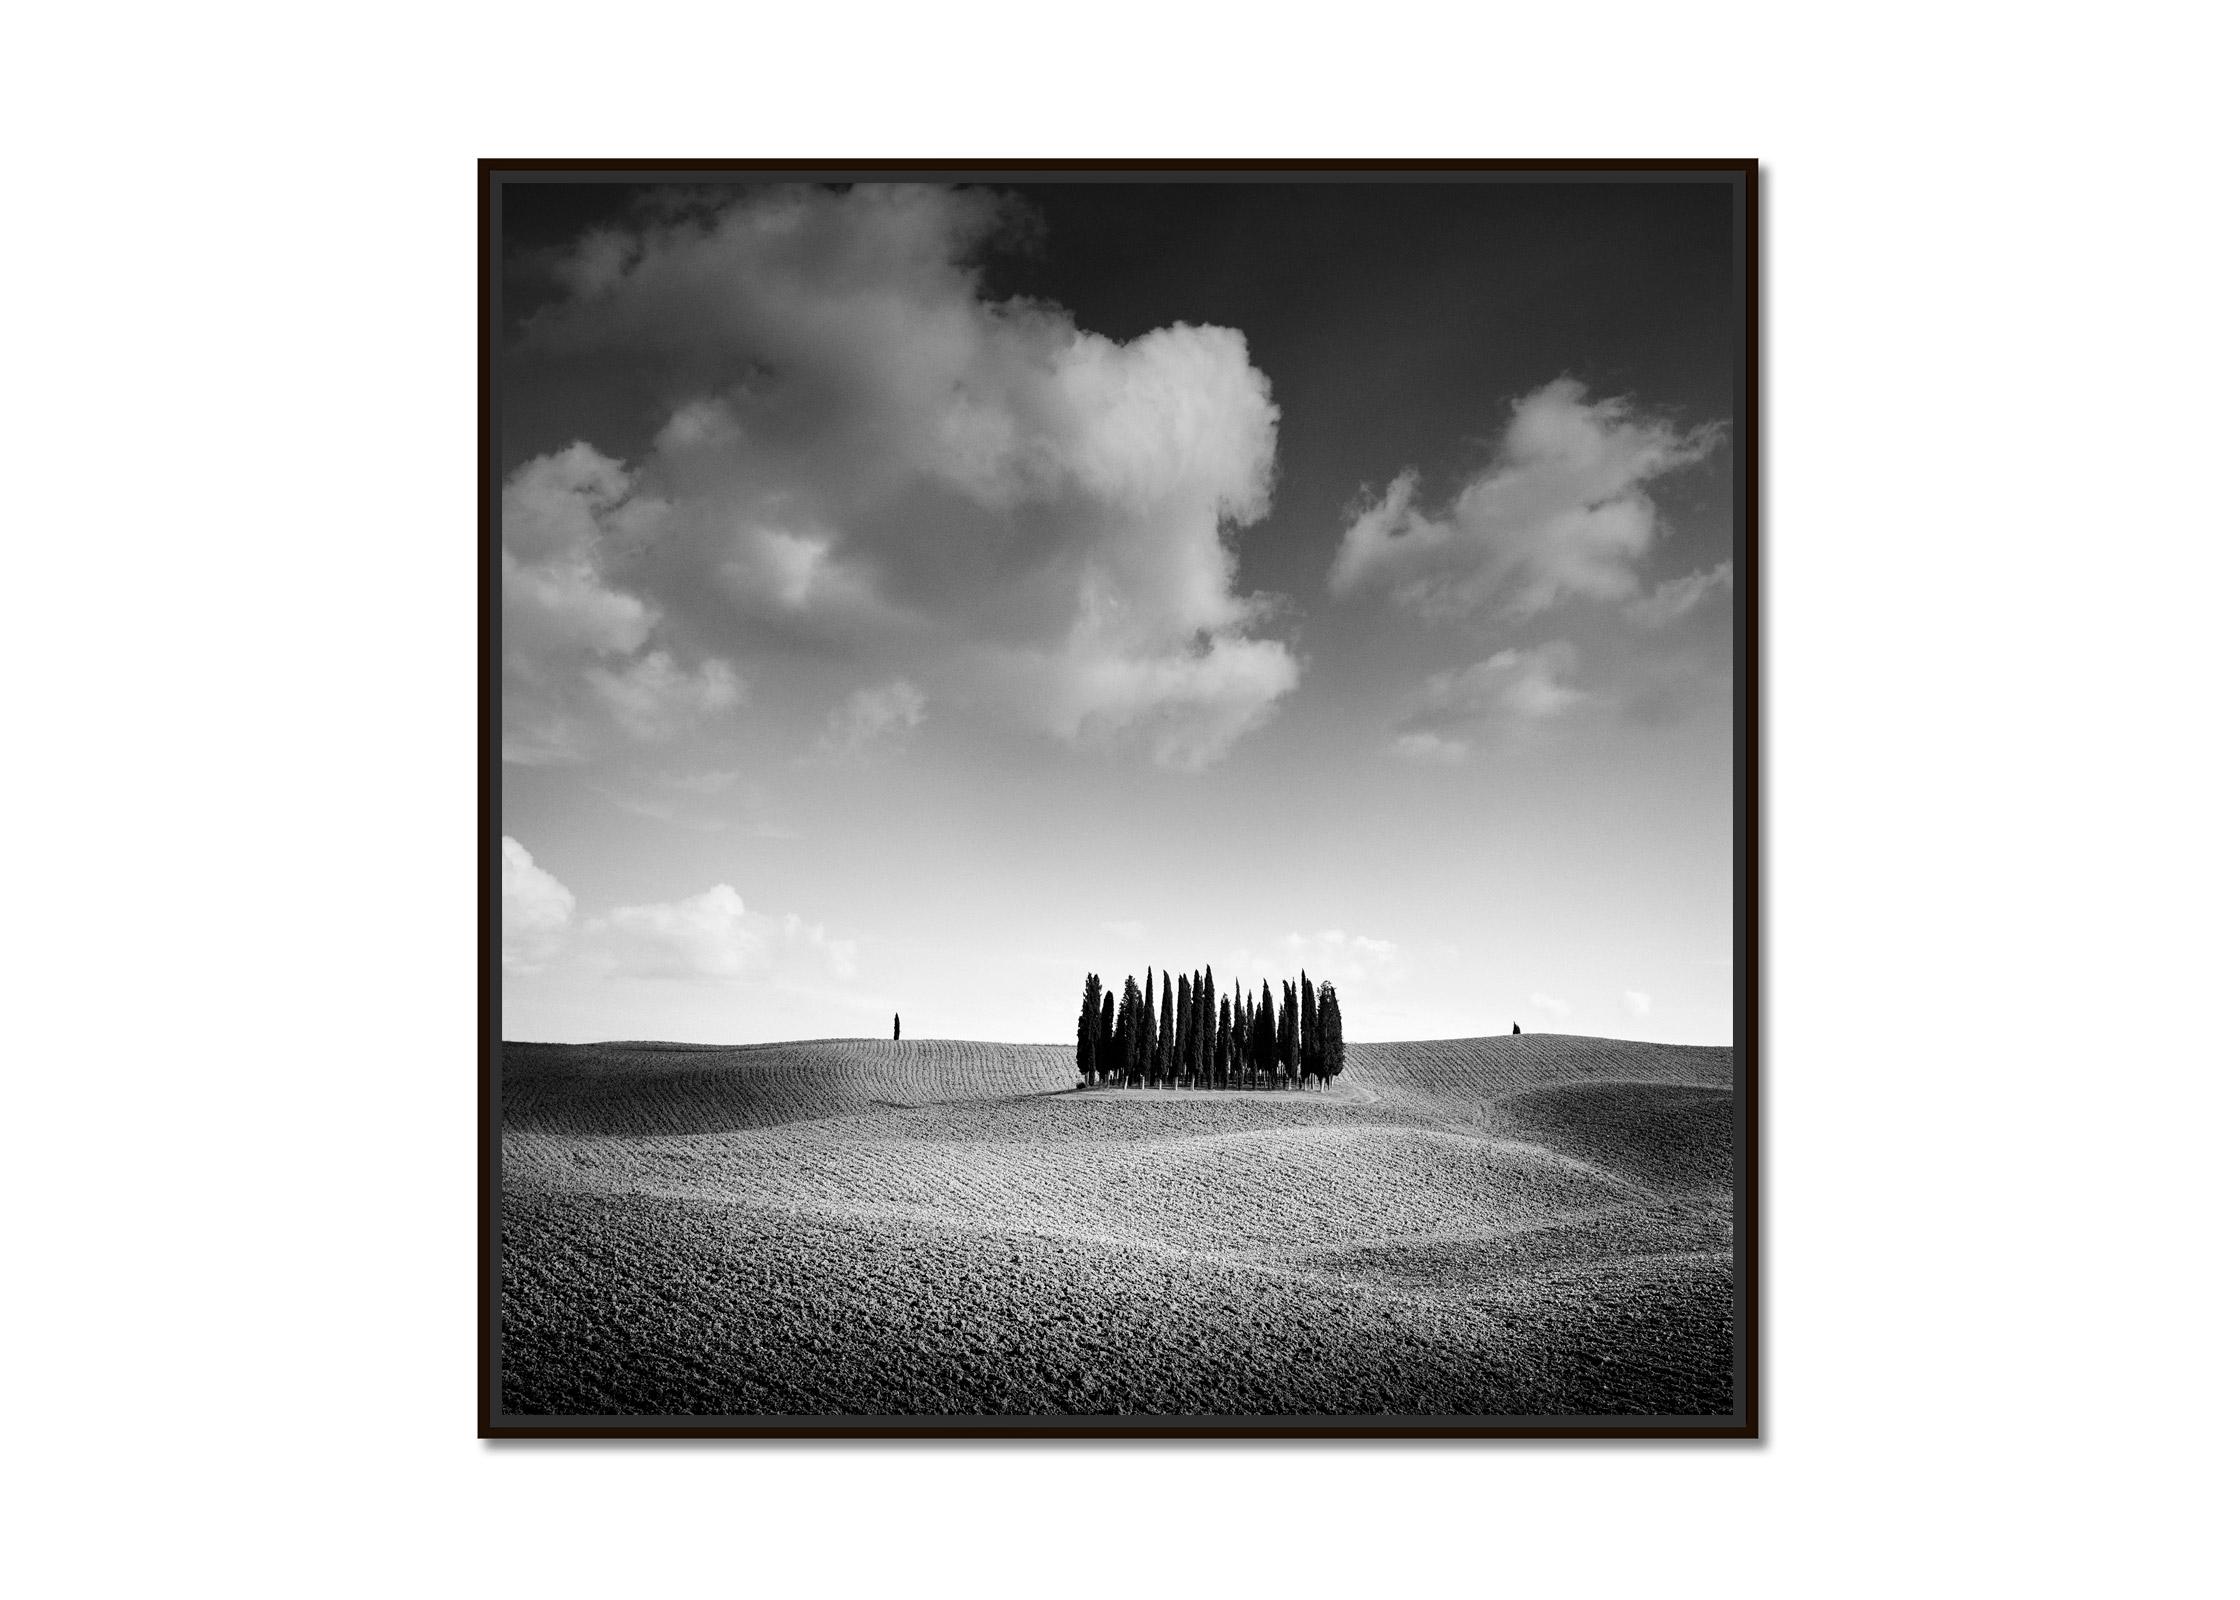   I Hill, arbre, Hille, photographie d'art en noir et blanc, paysage - Photograph de Gerald Berghammer